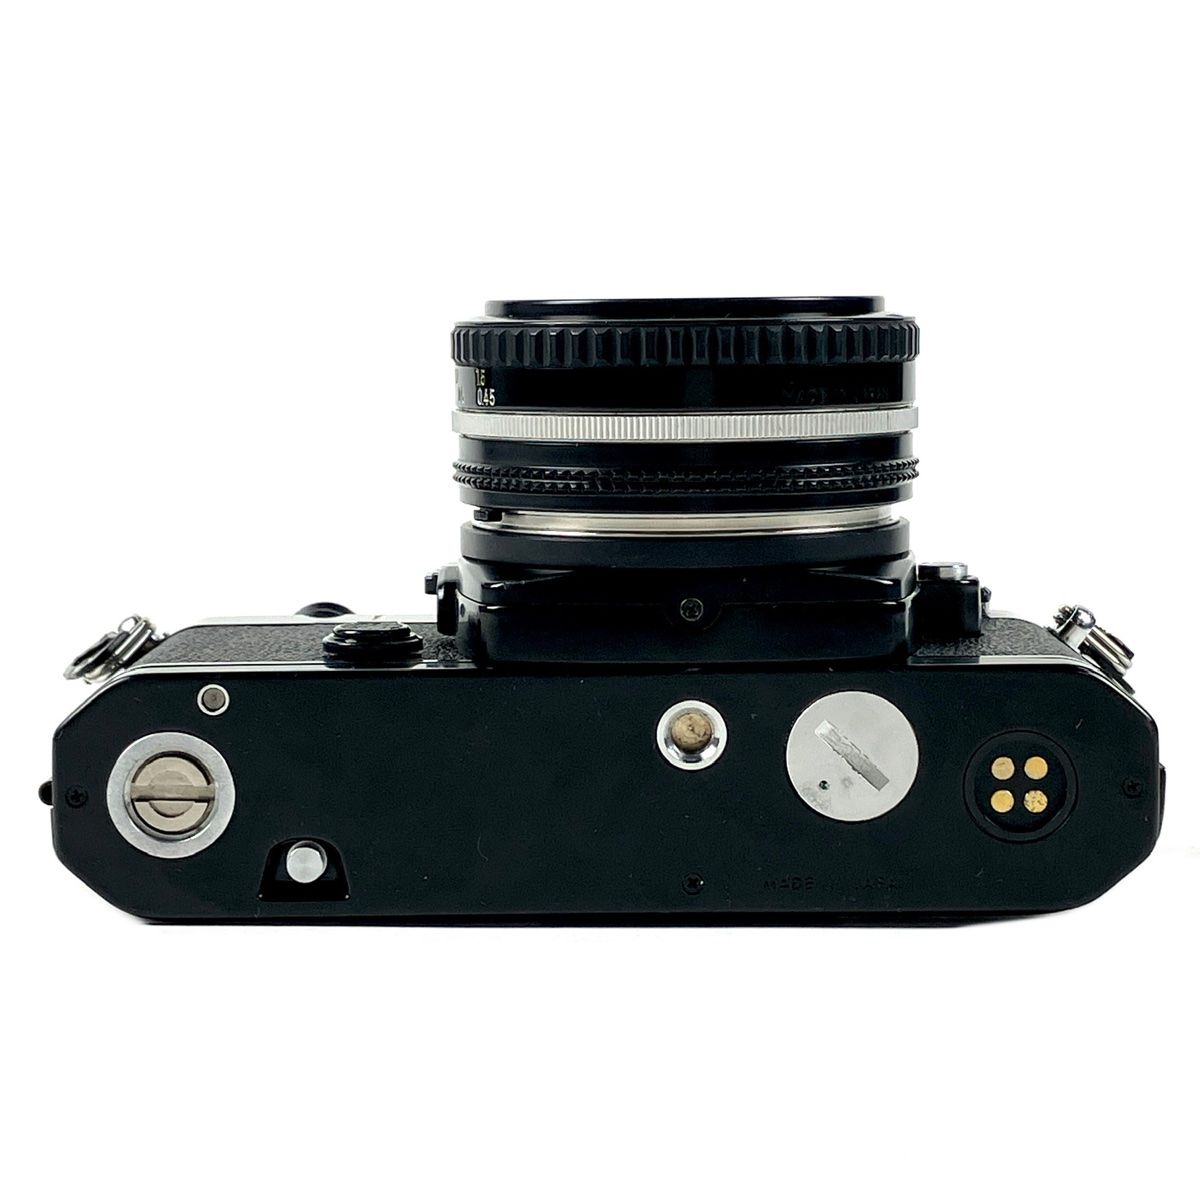 7,964円【動作品】ニコン Nikon FE Nikkor Ai 50mm F1.8